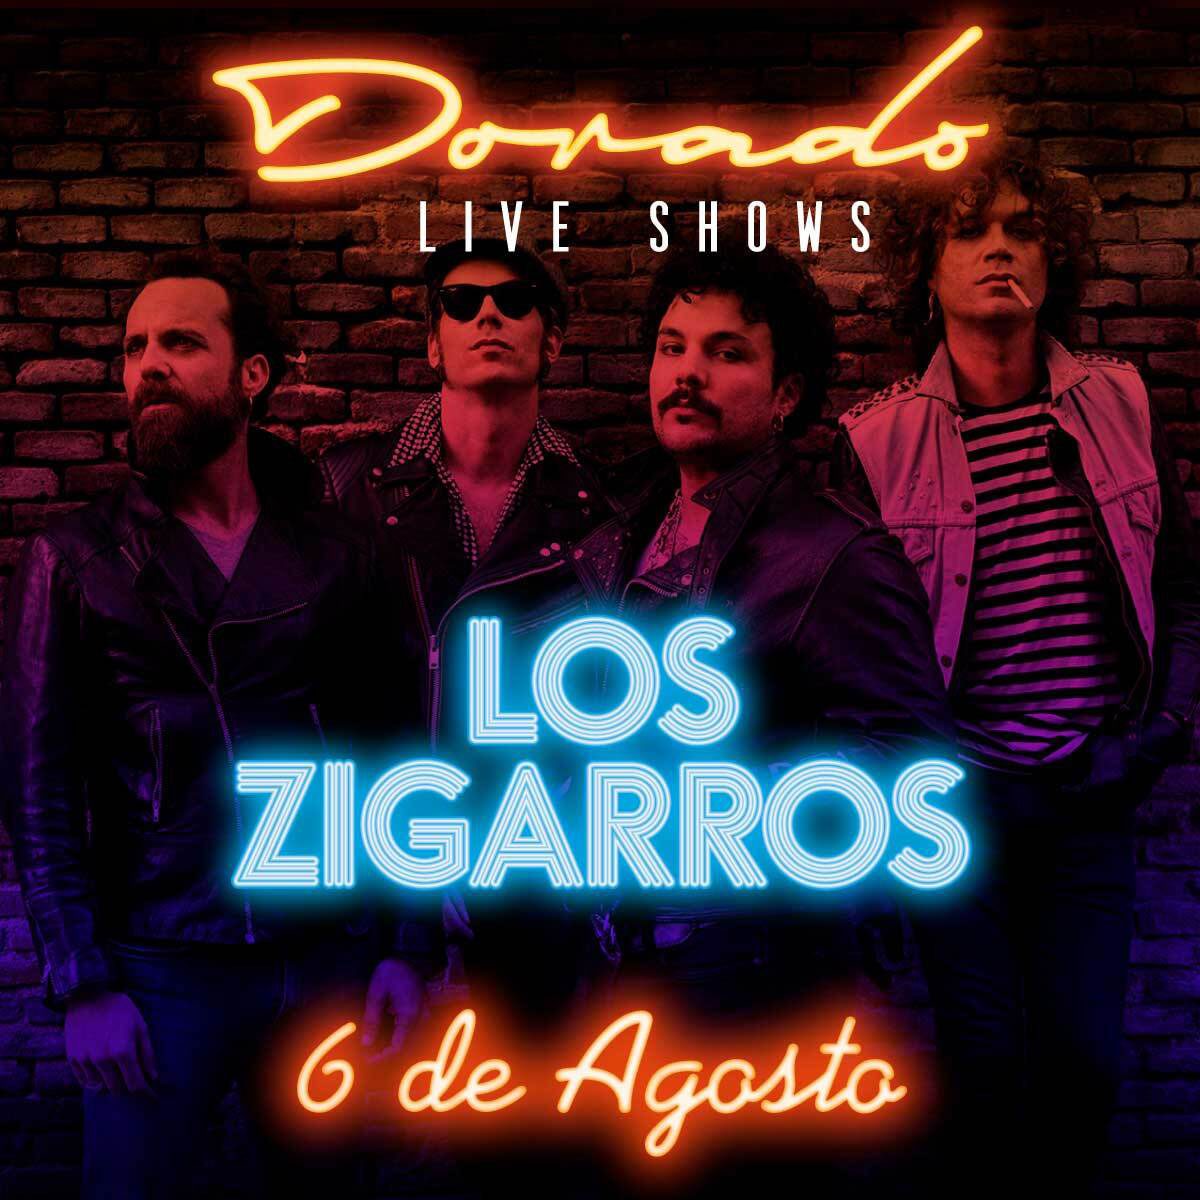 concierto-los-zigarros-dorado-live-shows-hotel-santos-ibiza-2020-welcometoibiza